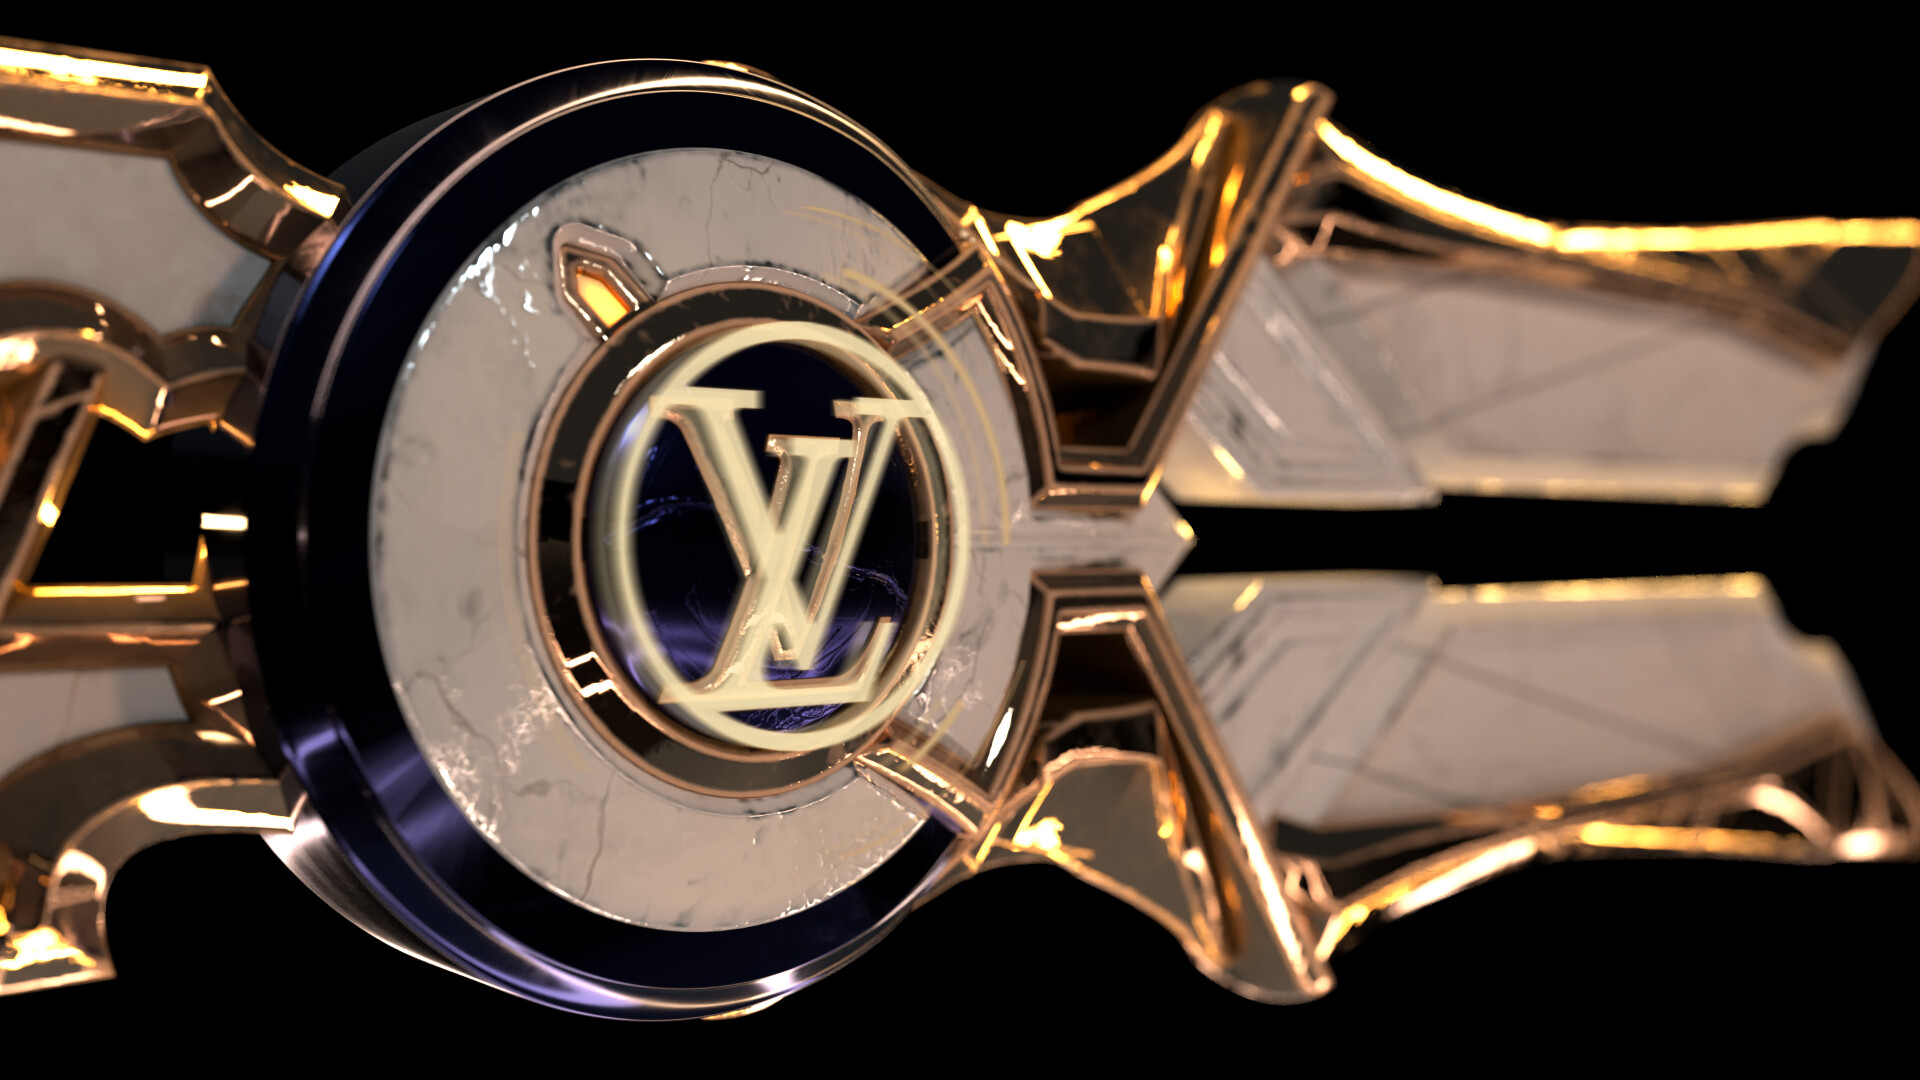 Louis Vuitton x League of Legends